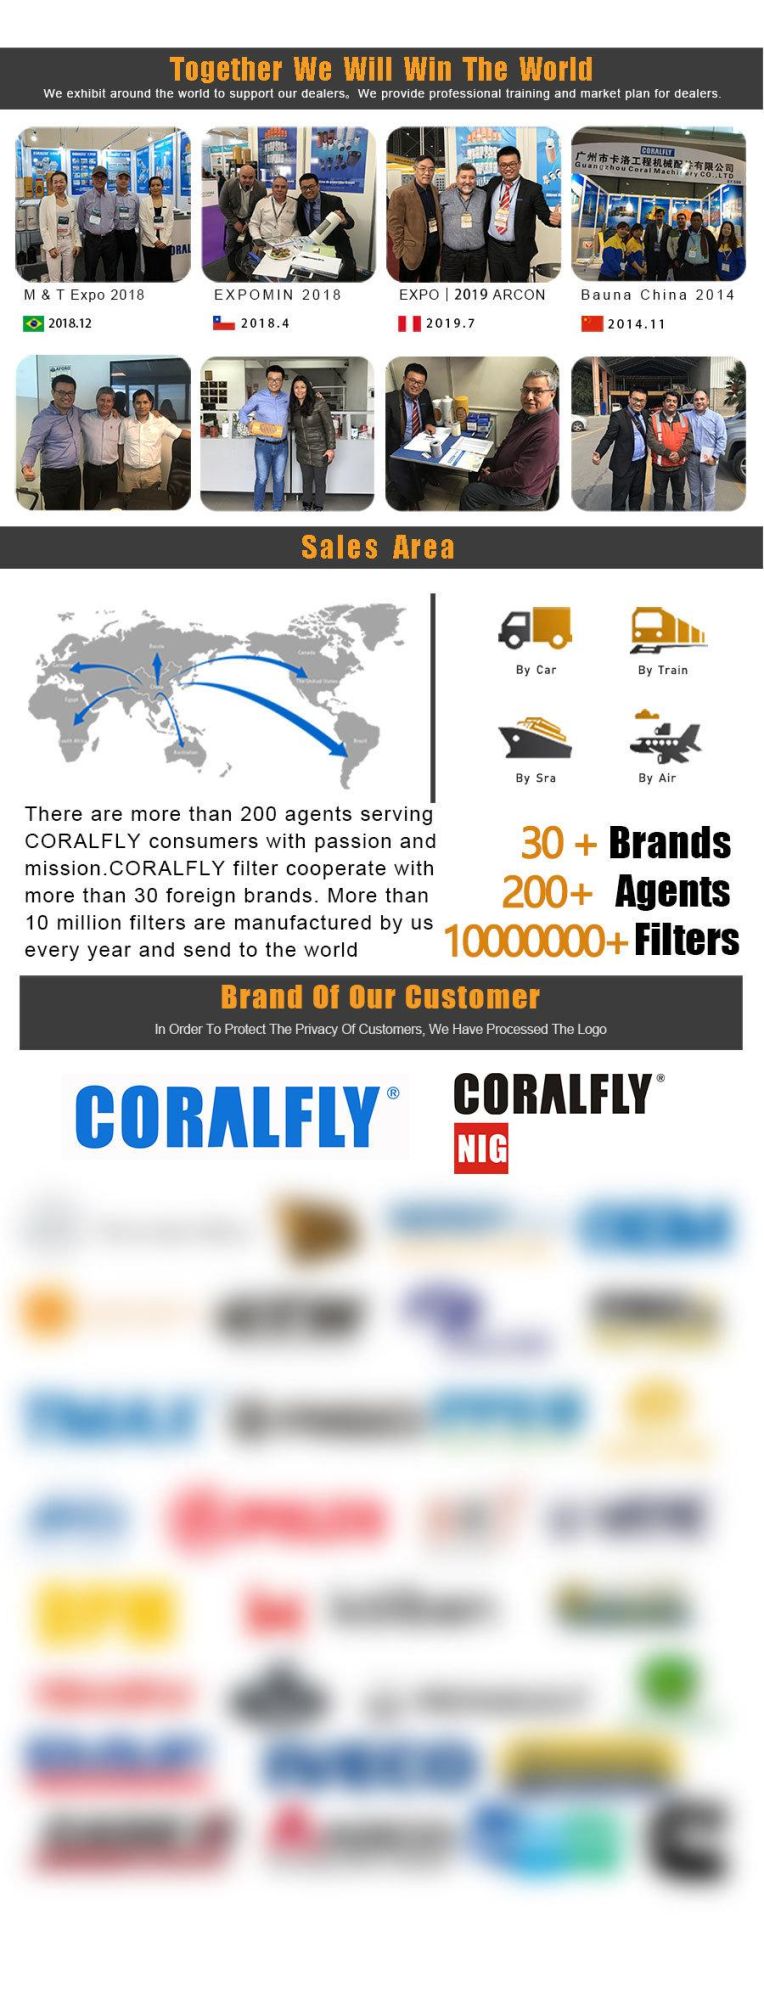 Coralfly Filters Truck Diesel Generator Filters for Fleetguard Fs1216 Fs1003 Fs1040 Lf3345 Lf3349 Lf777 Lf670 Lf9009 FF5421 Fs53014